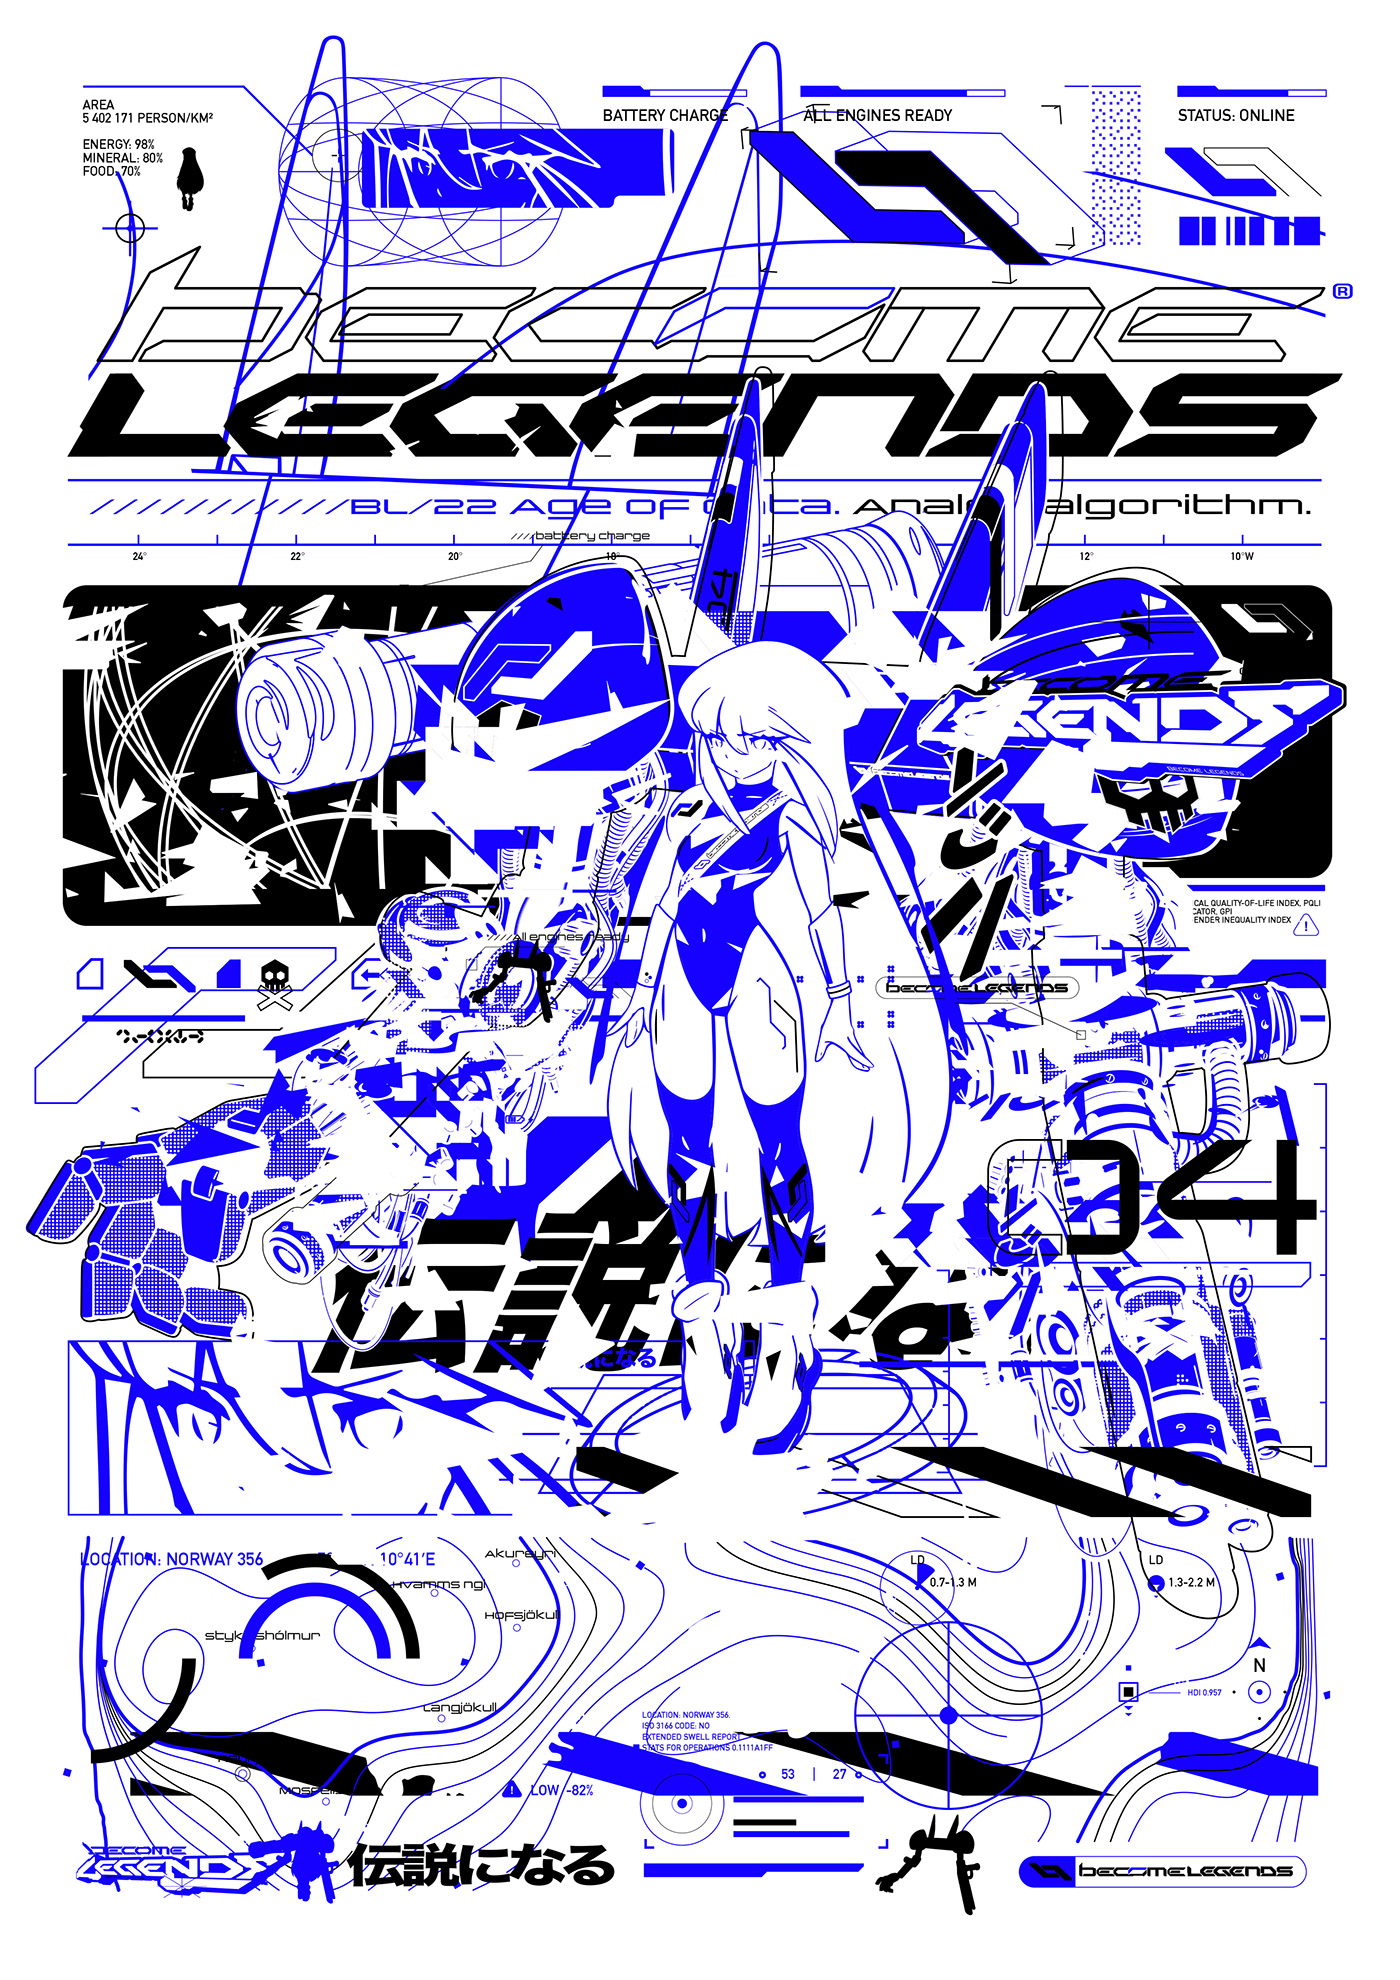 anime Cyberpunk futuristic manga mecha robot techno TECHWEAR topography akira